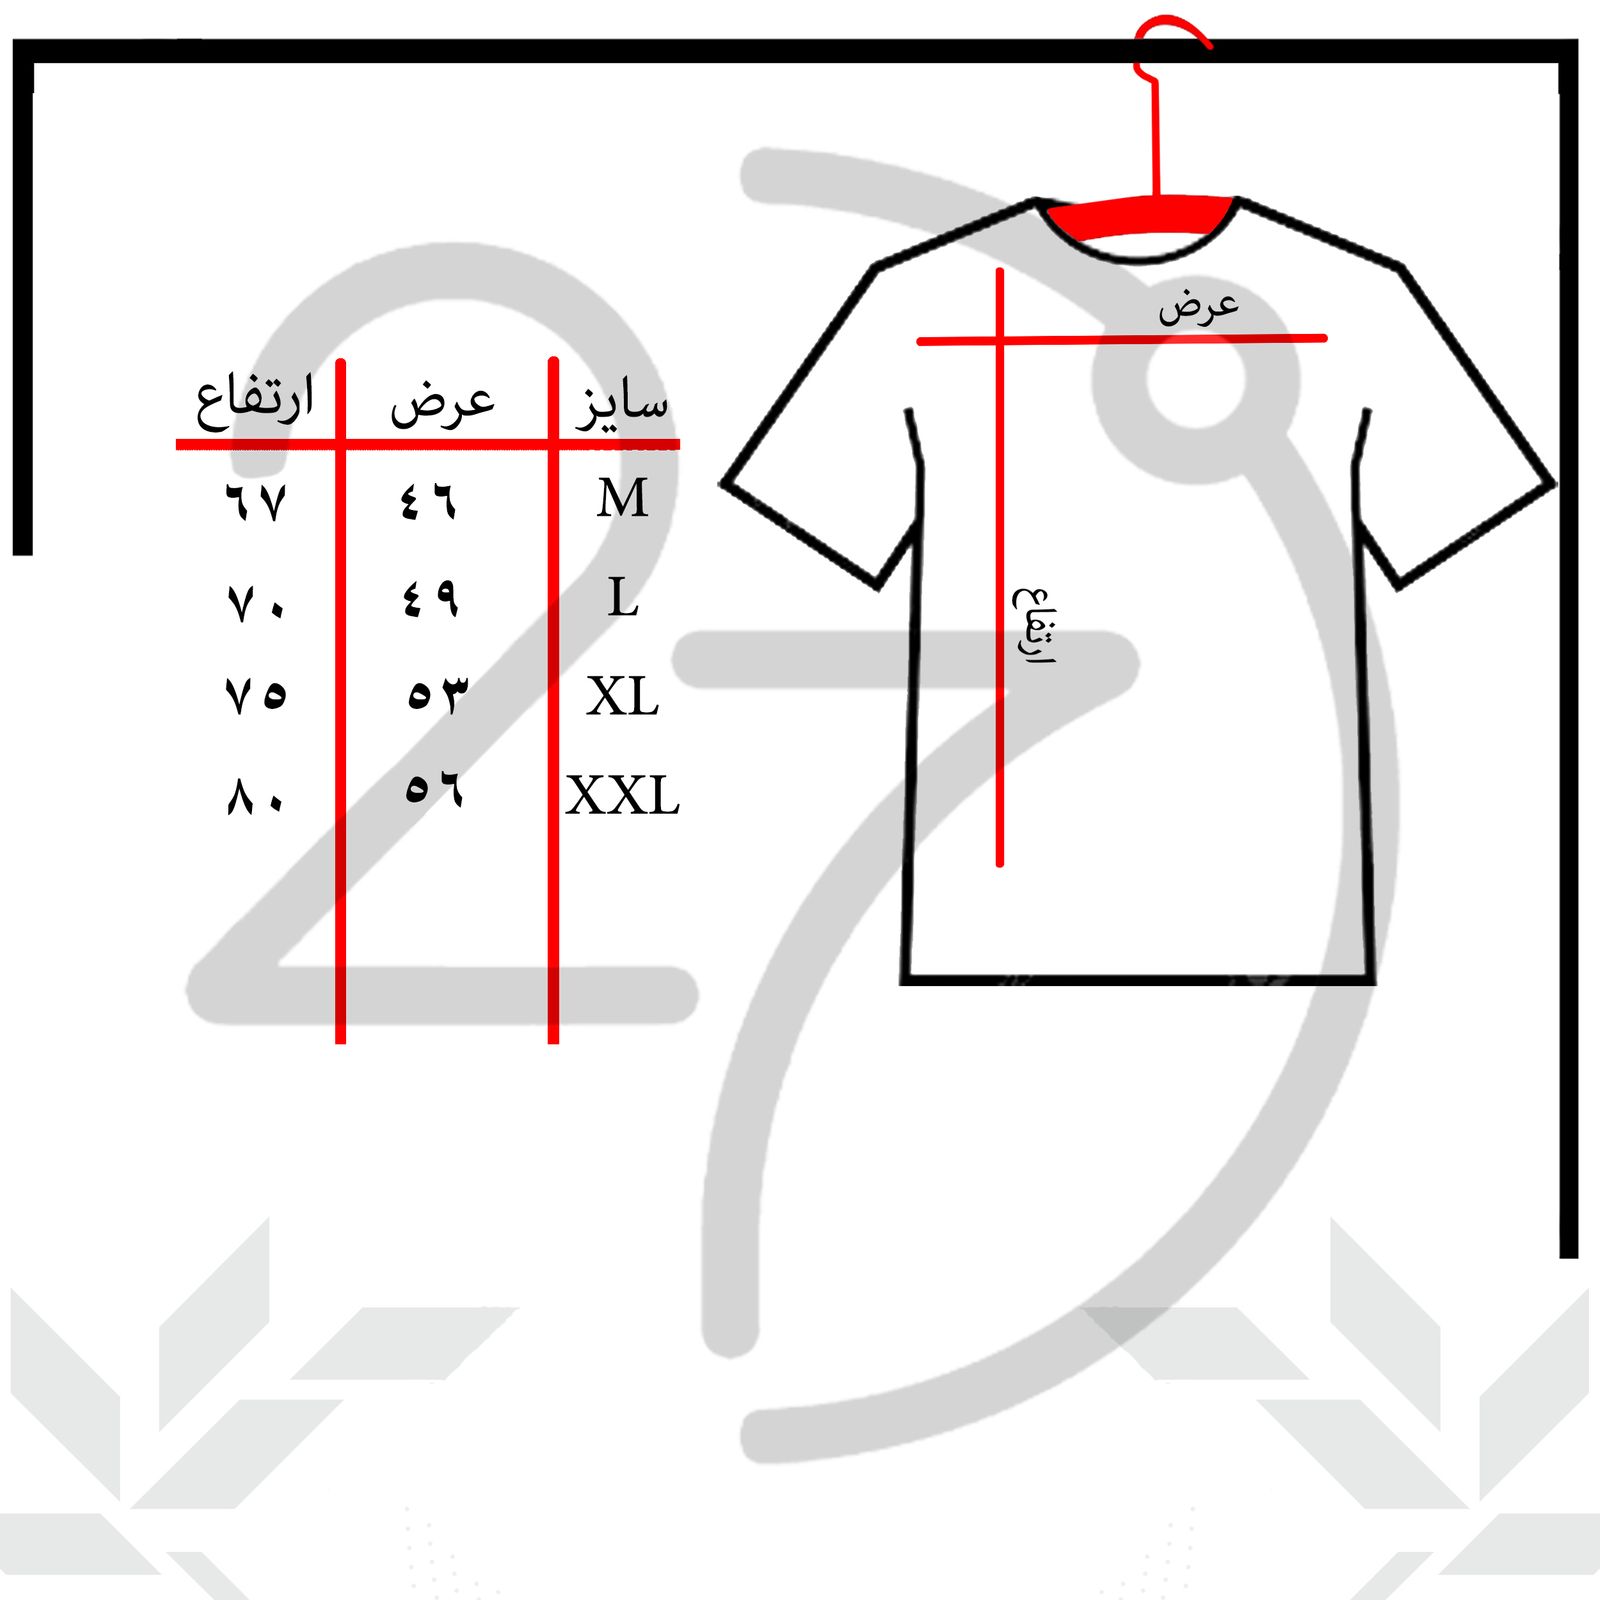 تی شرت آستین کوتاه مردانه 27 مدل ماشین کد KV245 رنگ سفید -  - 3